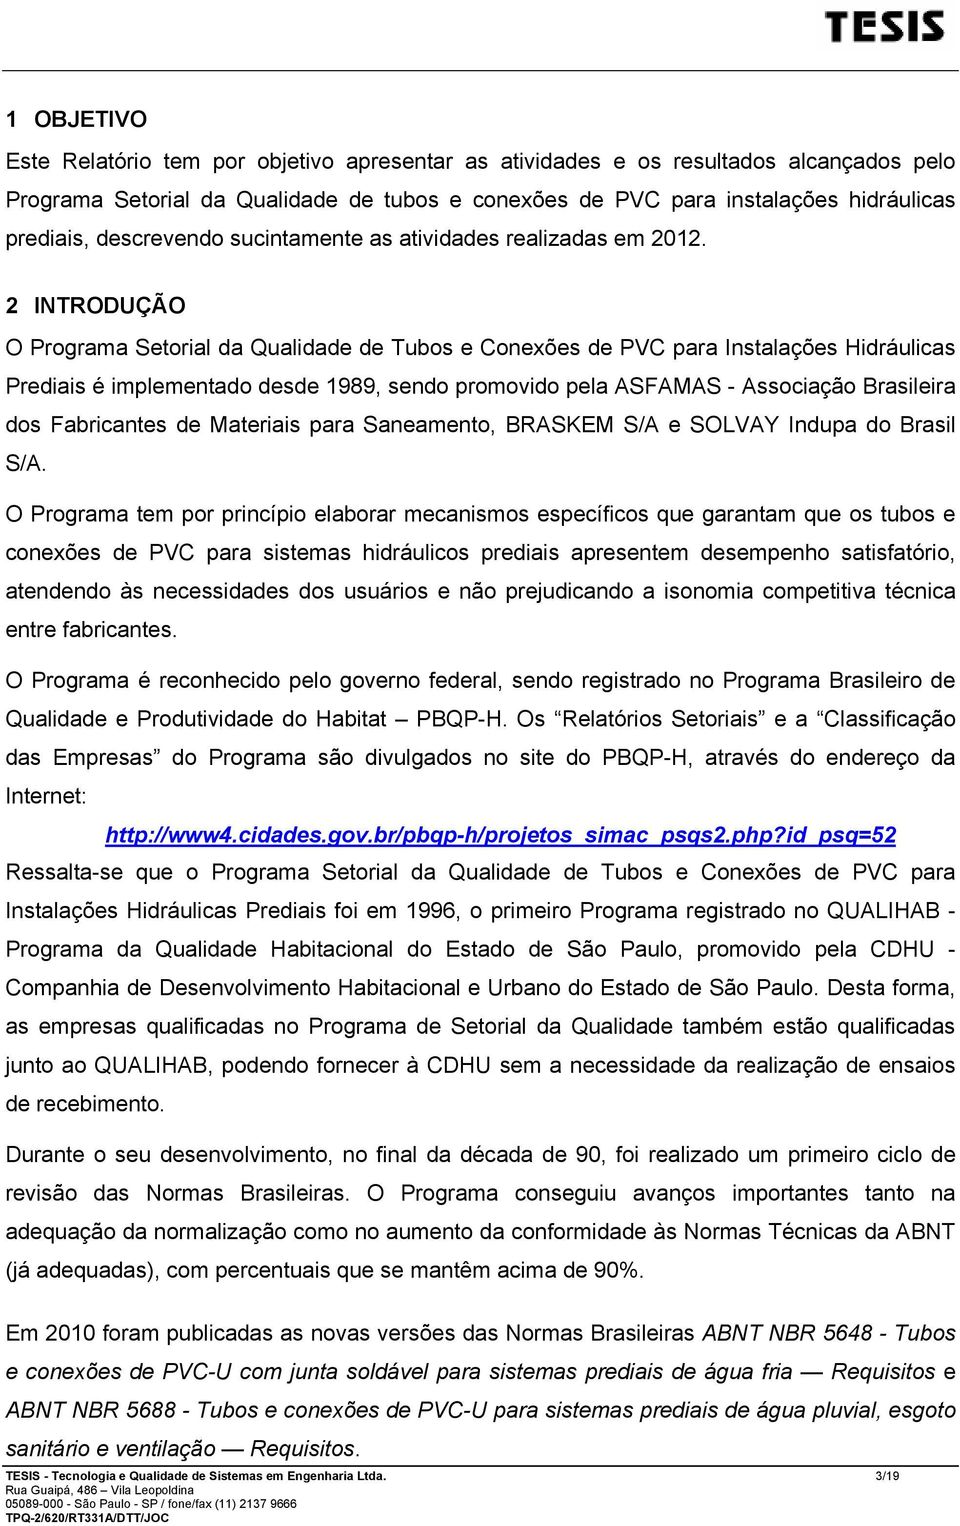 2 INTRODUÇÃO O Programa Setorial da Qualidade de Tubos e Conexões de PVC para Instalações Hidráulicas Prediais é implementado desde 1989, sendo promovido pela ASFAMAS - Associação Brasileira dos